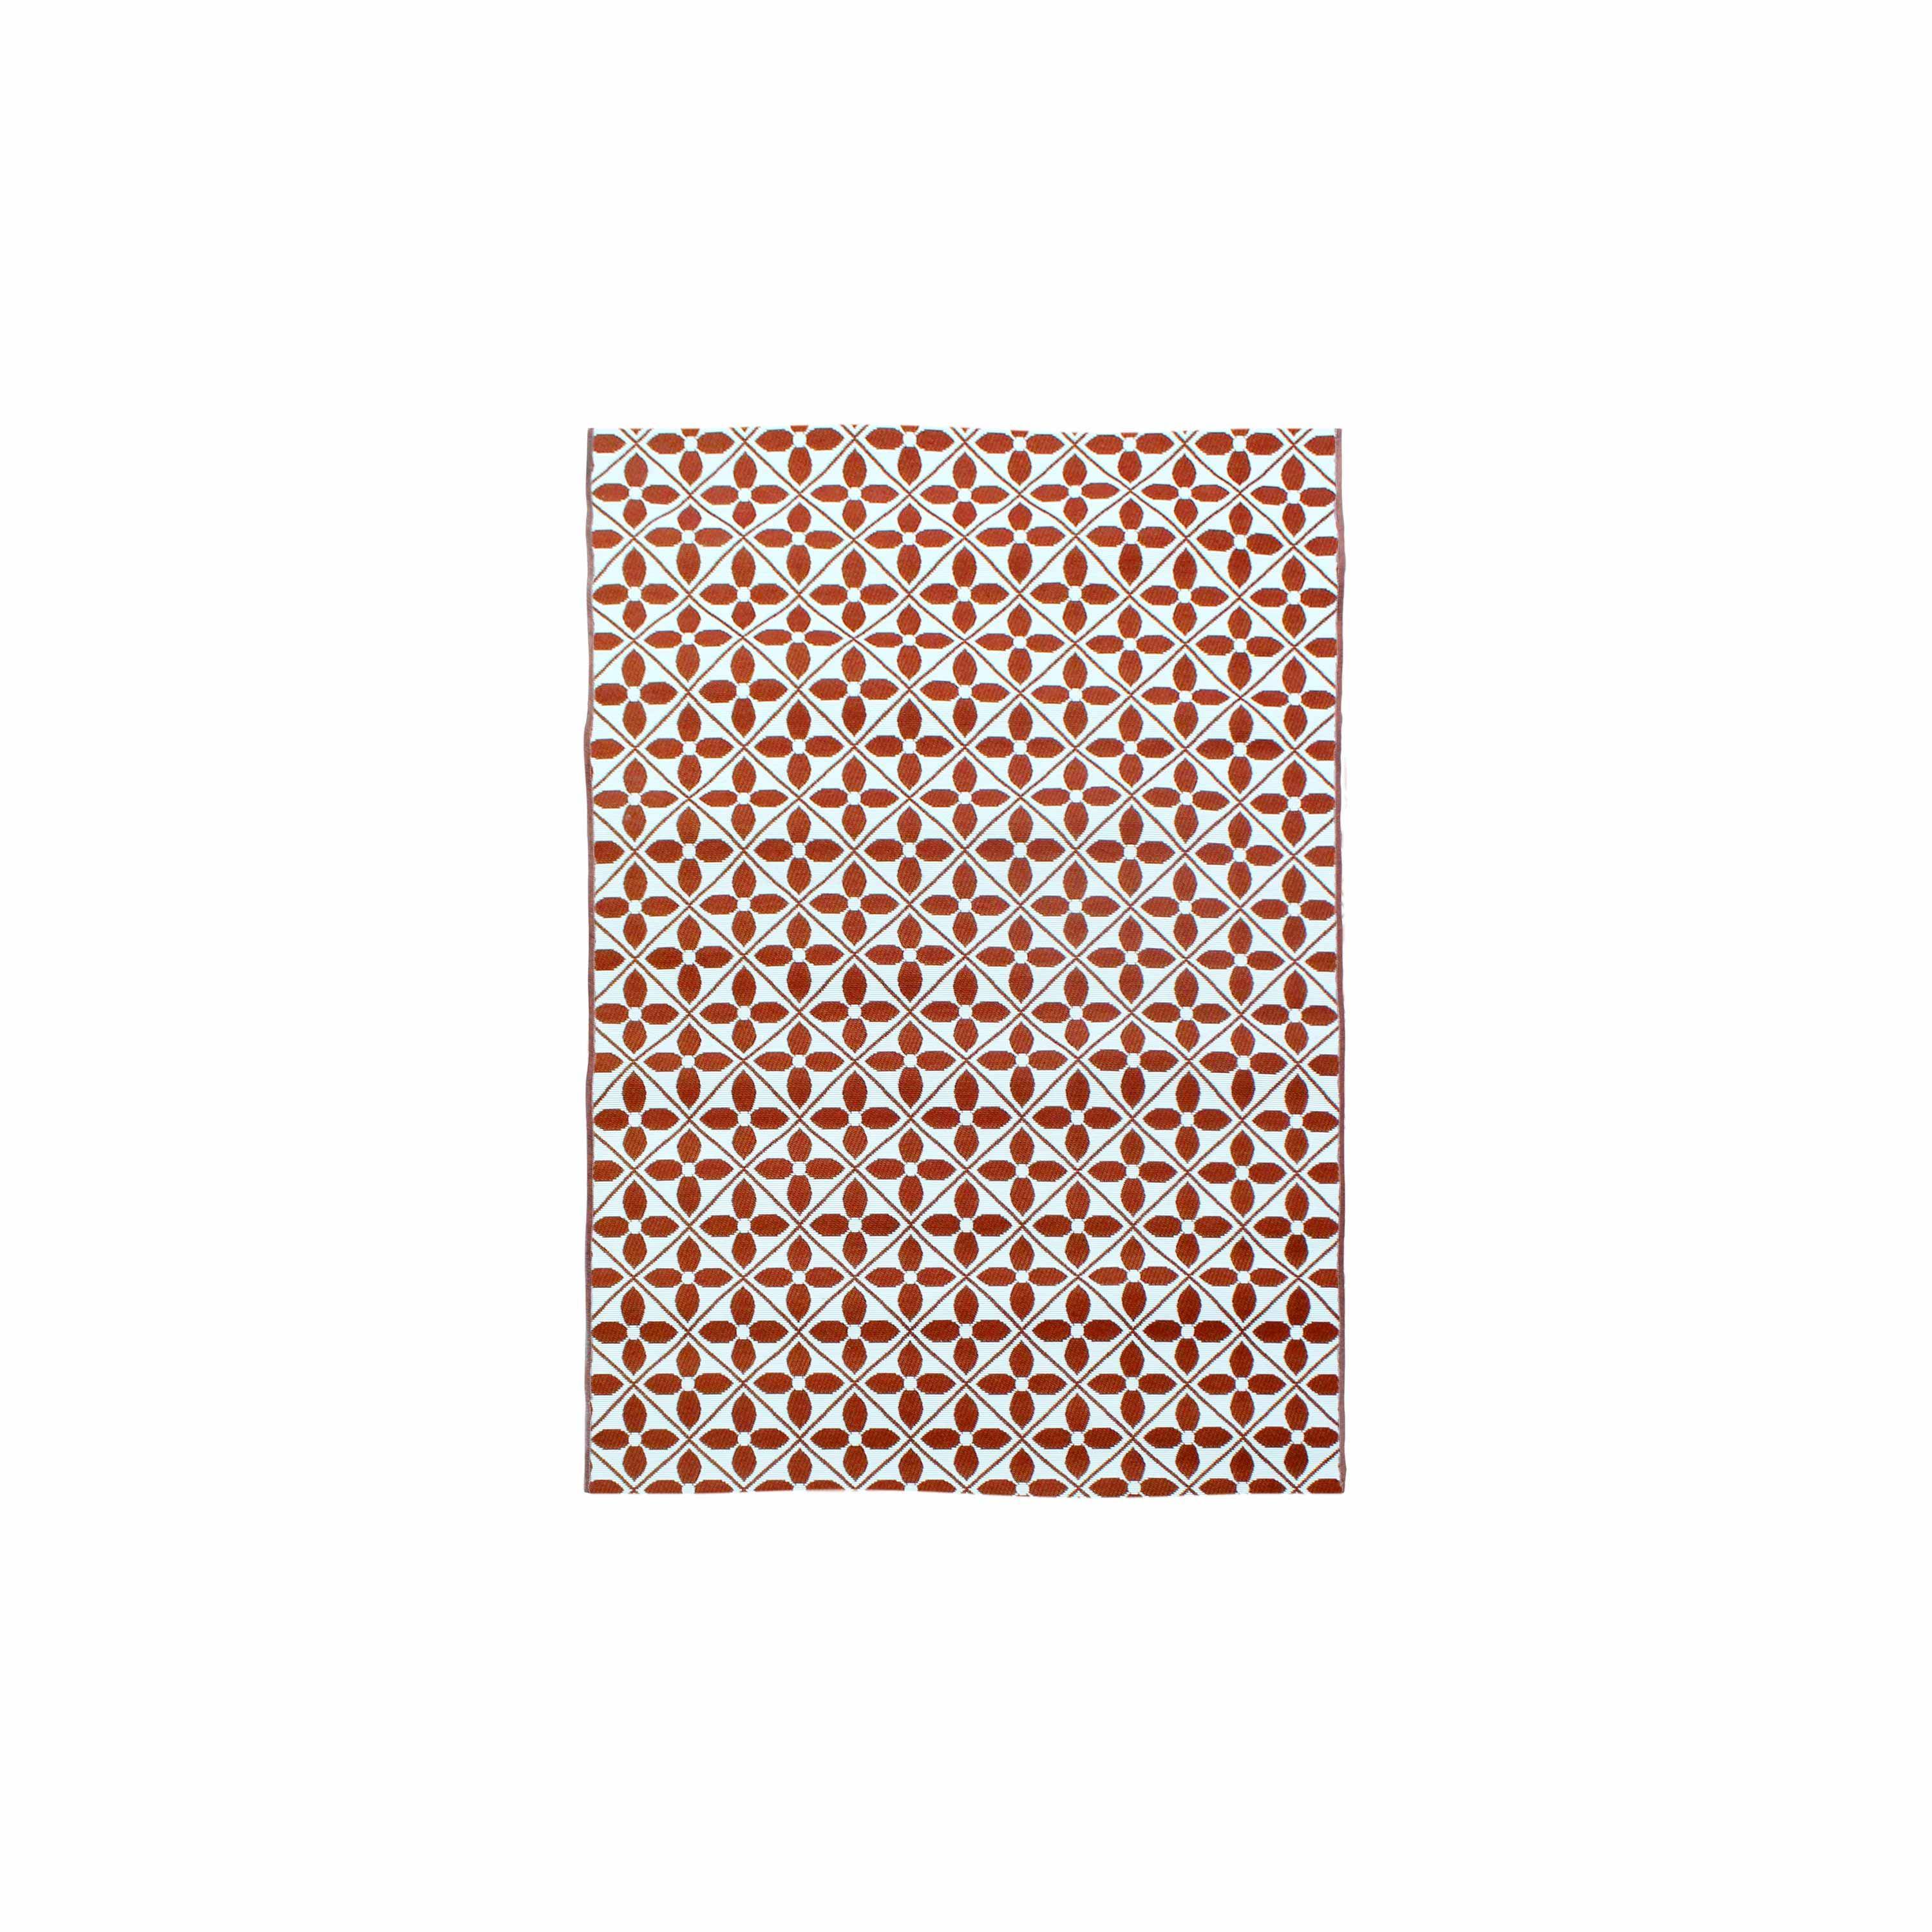 Outdoor rug - 160x230cm - tile print, rectangular, indoor/outdoor use - Terracotta,sweeek,Photo3